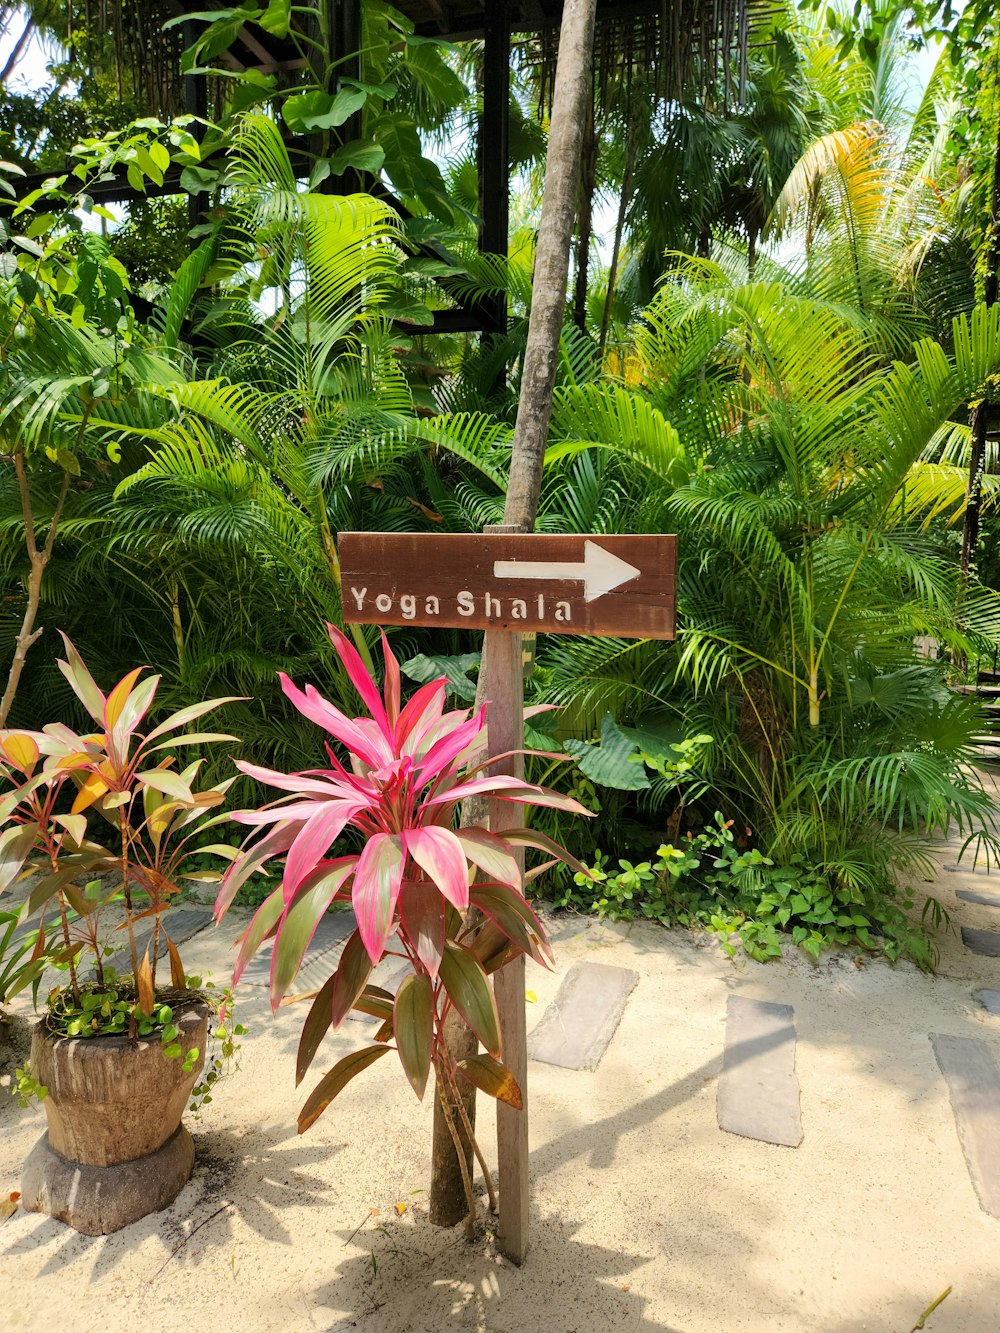 Un letrero que apunta a Yonn Shala en un entorno tropical